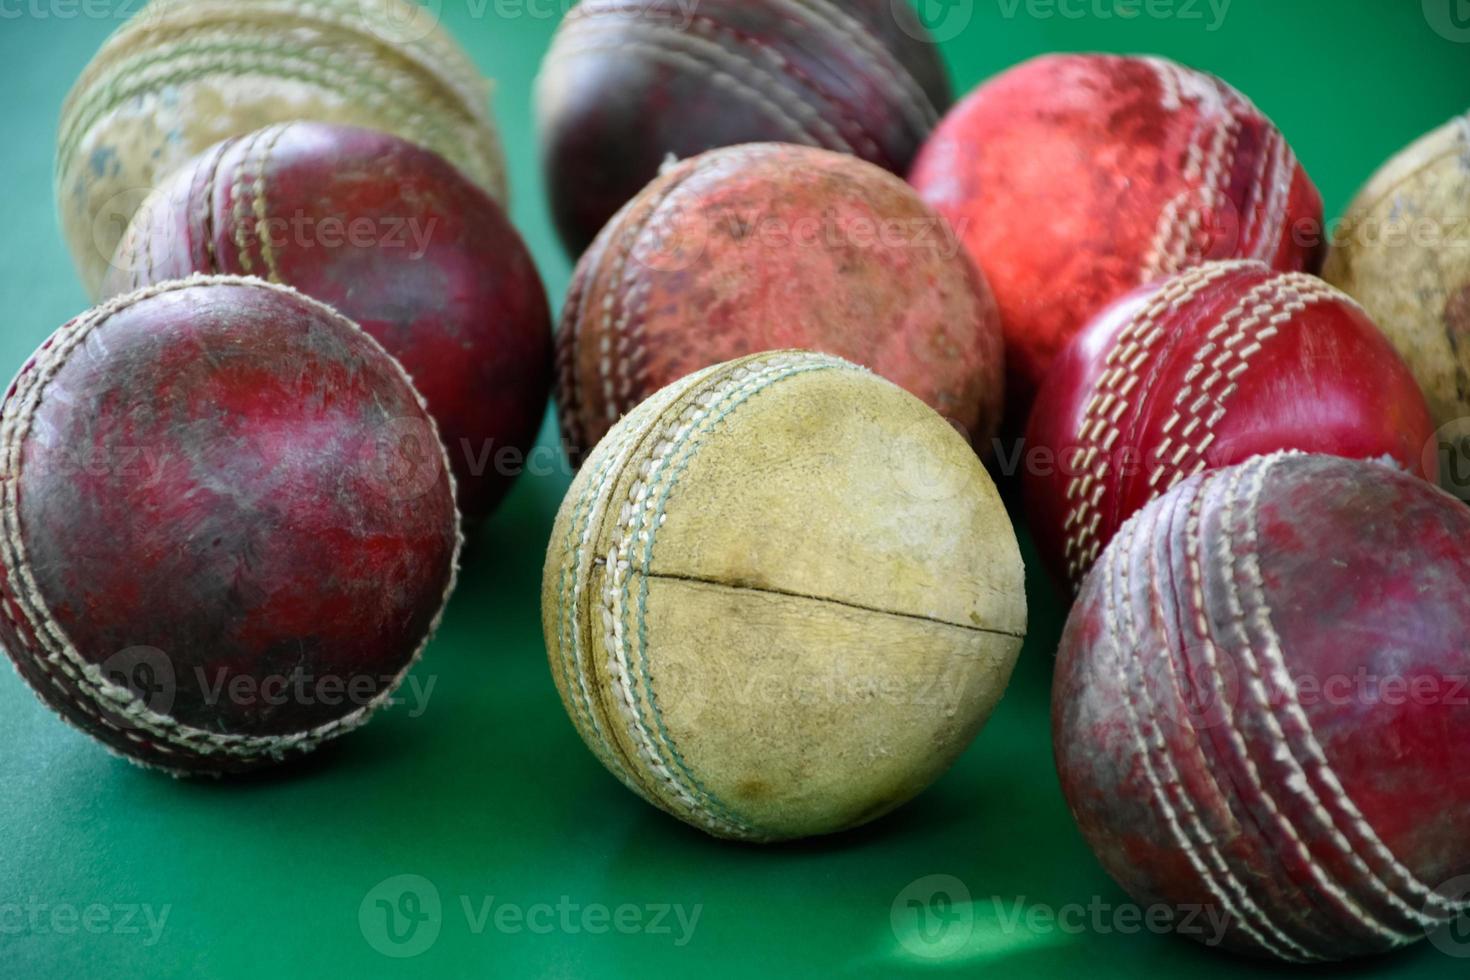 primo piano palle da cricket in pelle vecchie e usate sul pavimento verde, fuoco morbido e selettivo. concetto per gli amanti del cricket in tutto il mondo. foto